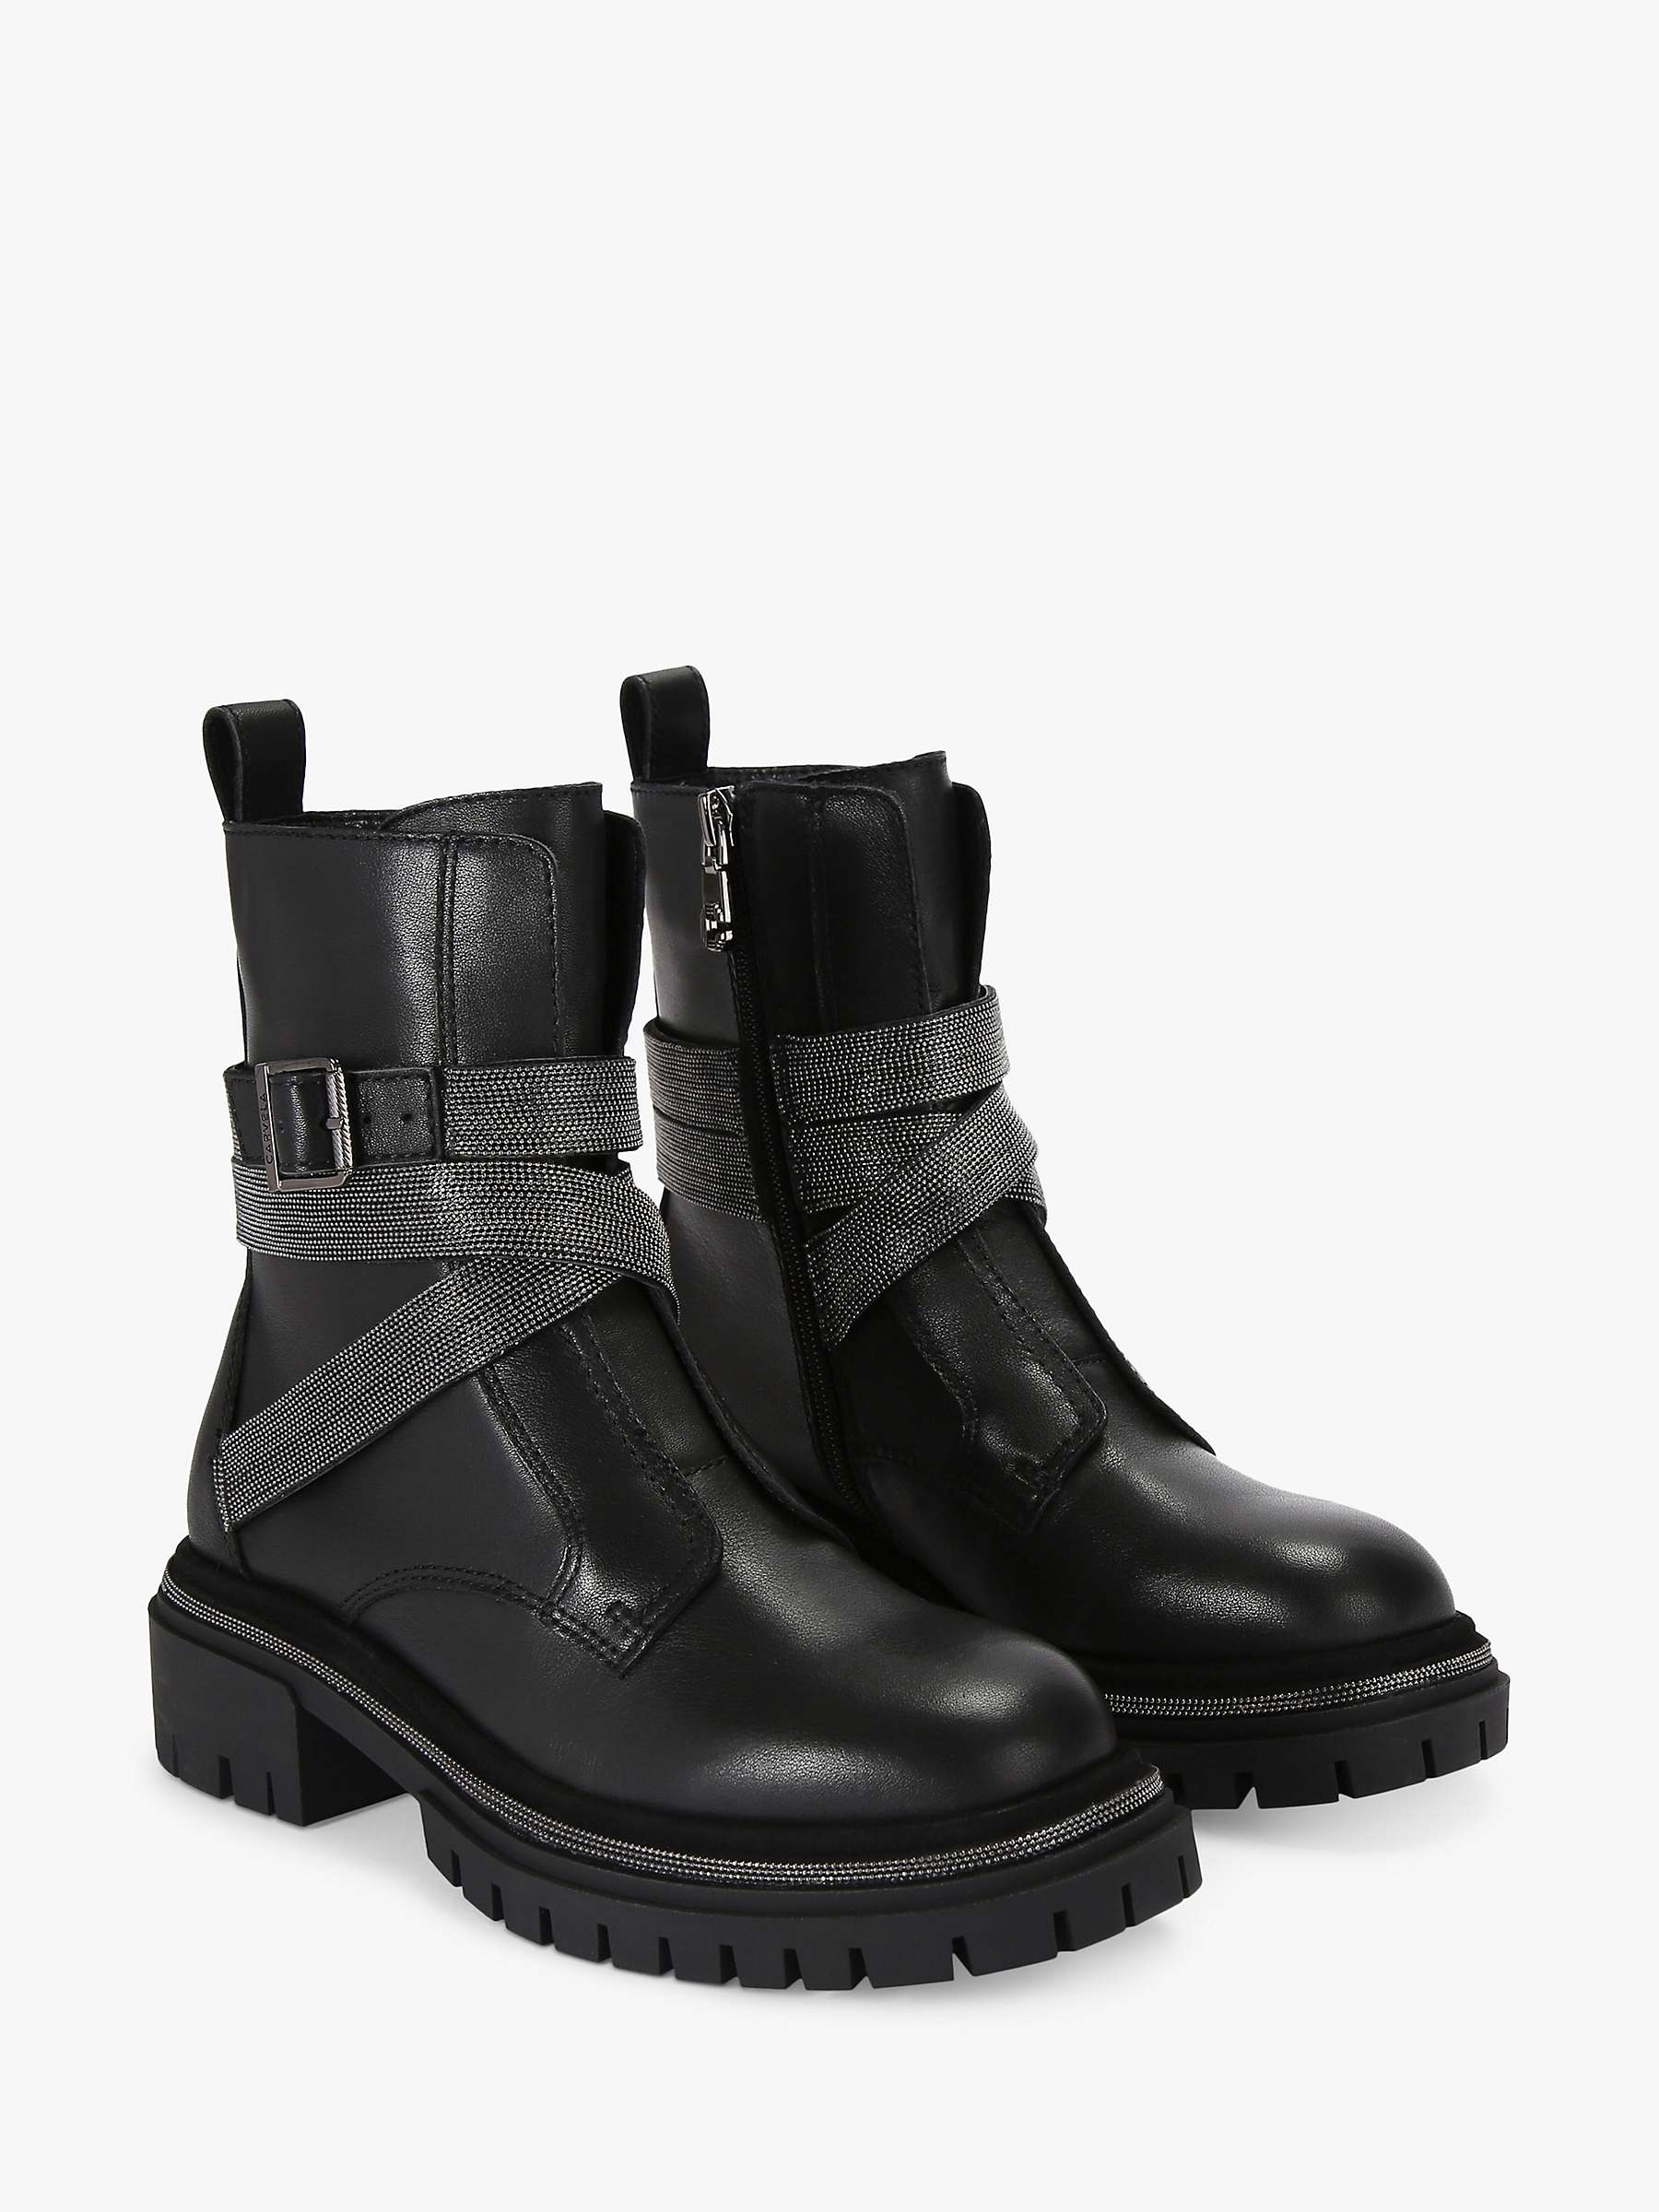 Buy Carvela Emblaze Leather Biker Boots, Black Online at johnlewis.com